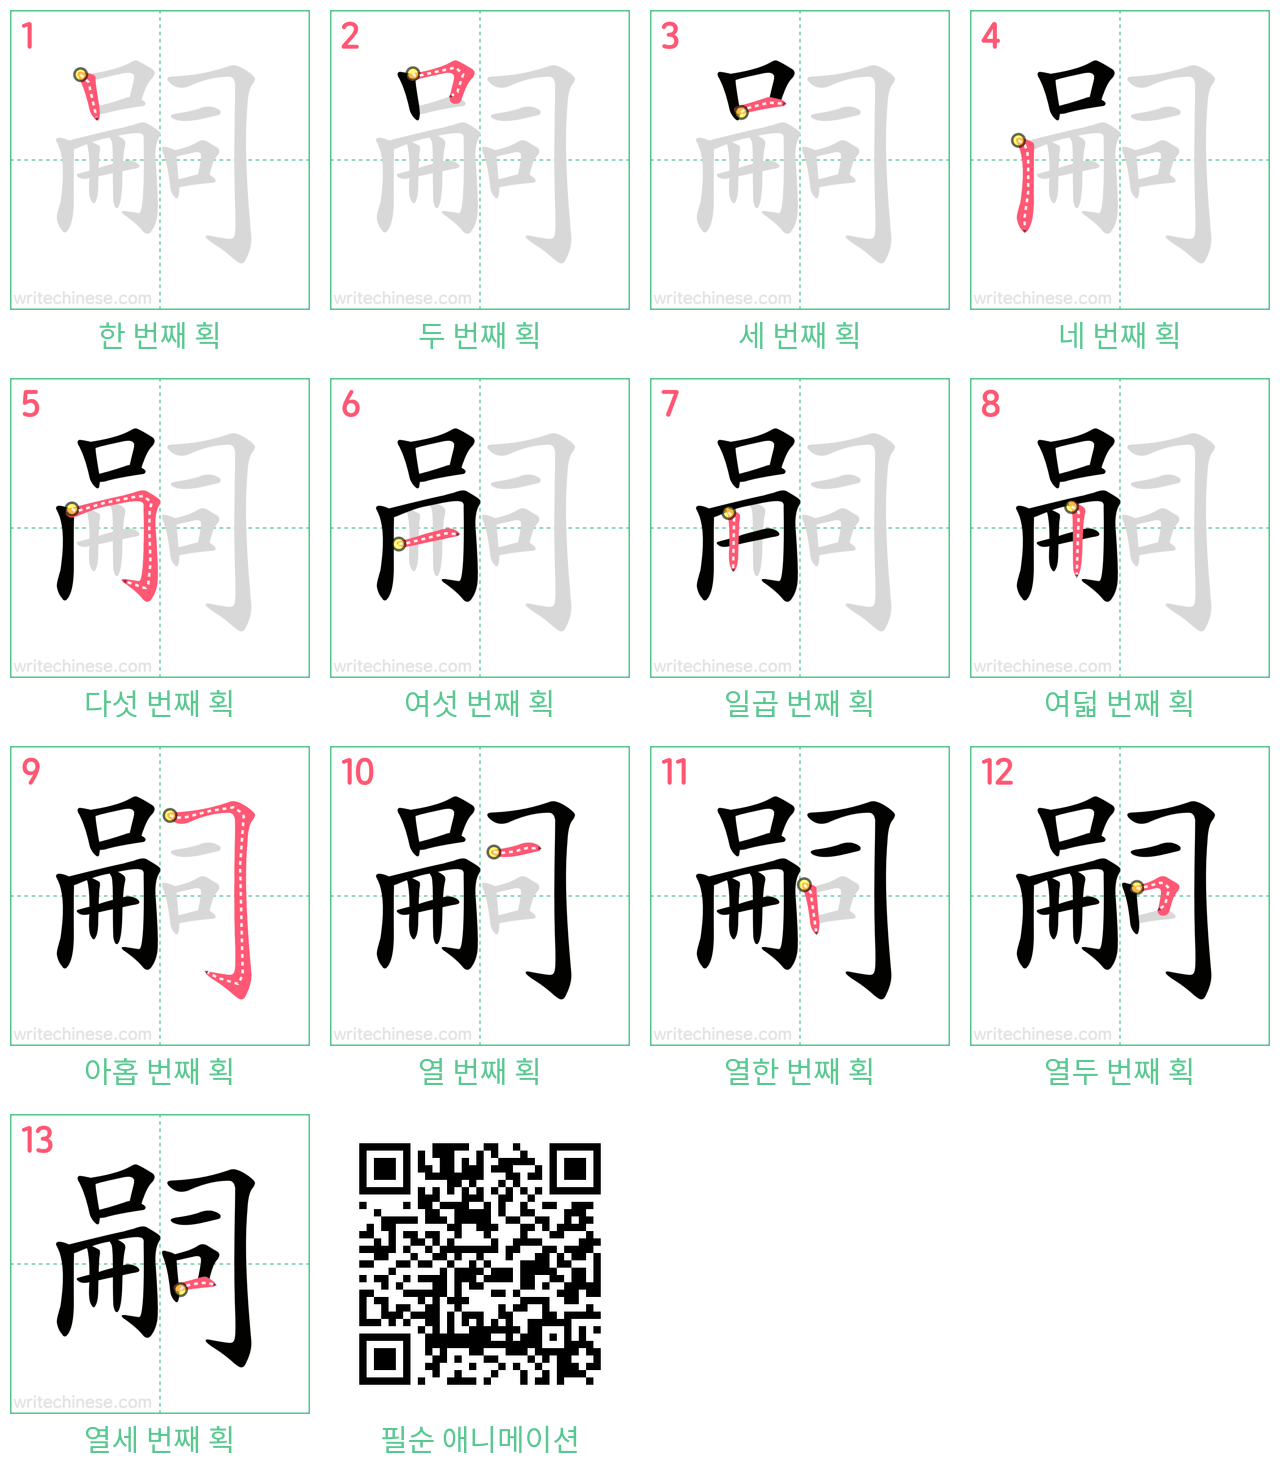 嗣 step-by-step stroke order diagrams